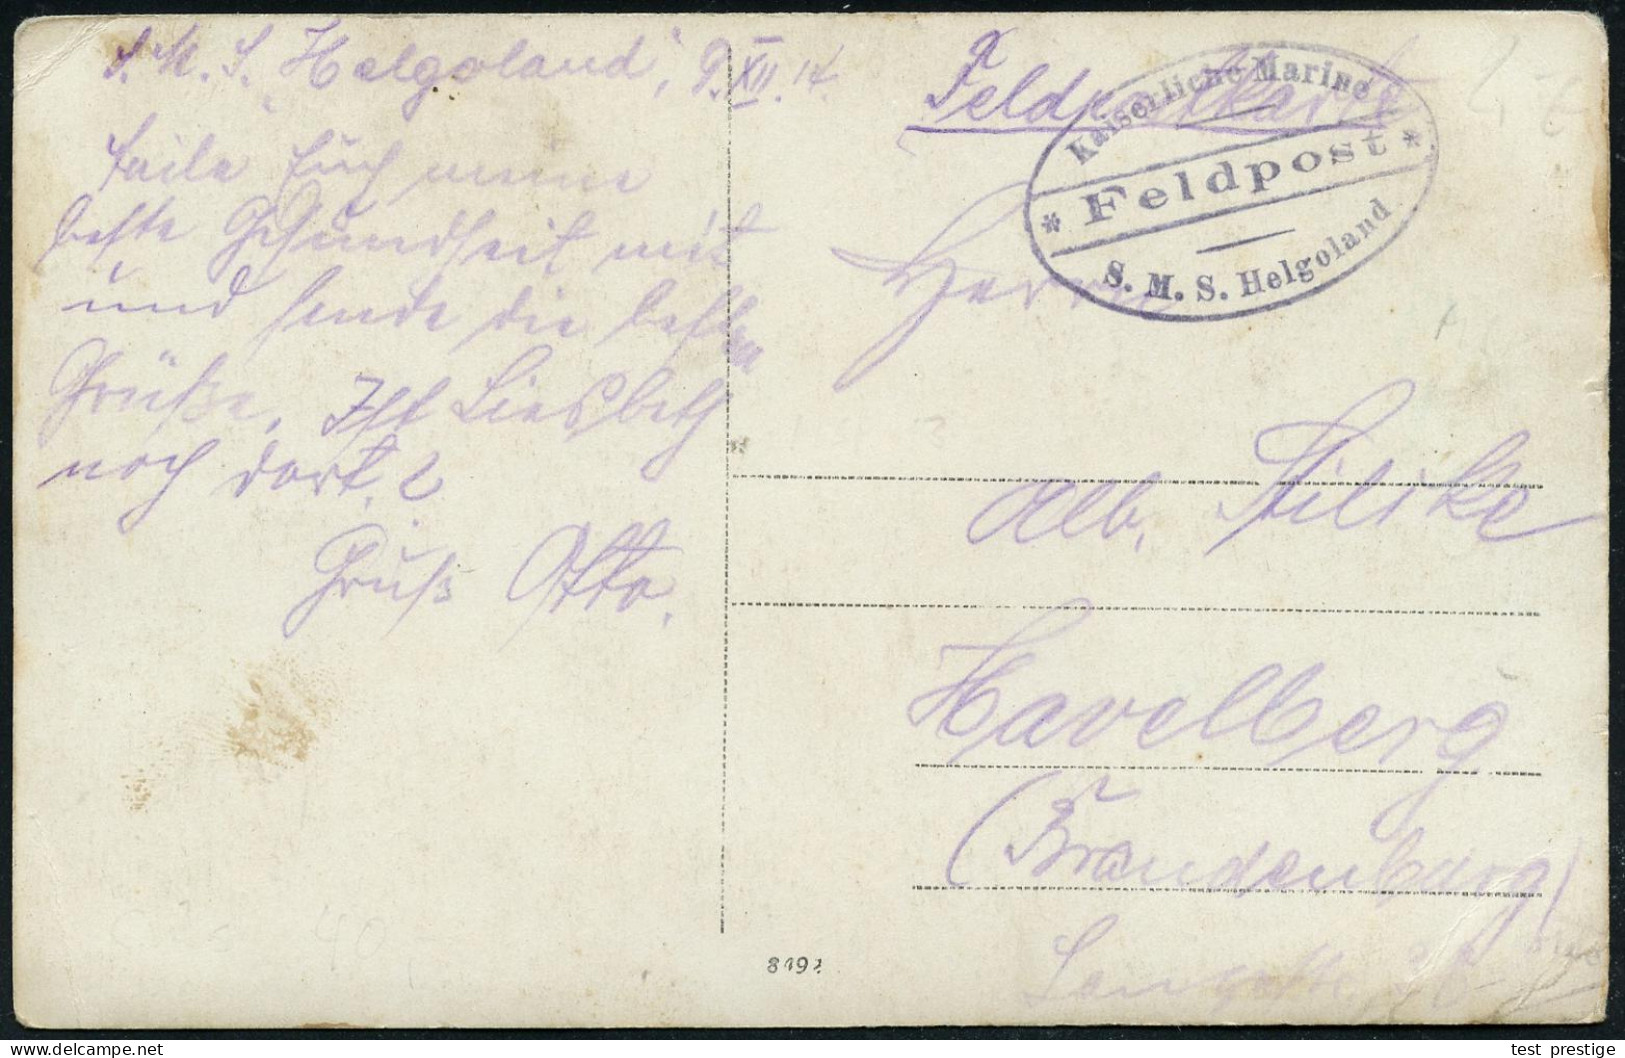 DEUTSCHES REICH 1914 (9.12.) MSP No.13, Viol. Ovalbrücken-Briefstempel: Kaiserliche Marine/* Feldpost */ S.M.S. Helgolan - Maritime